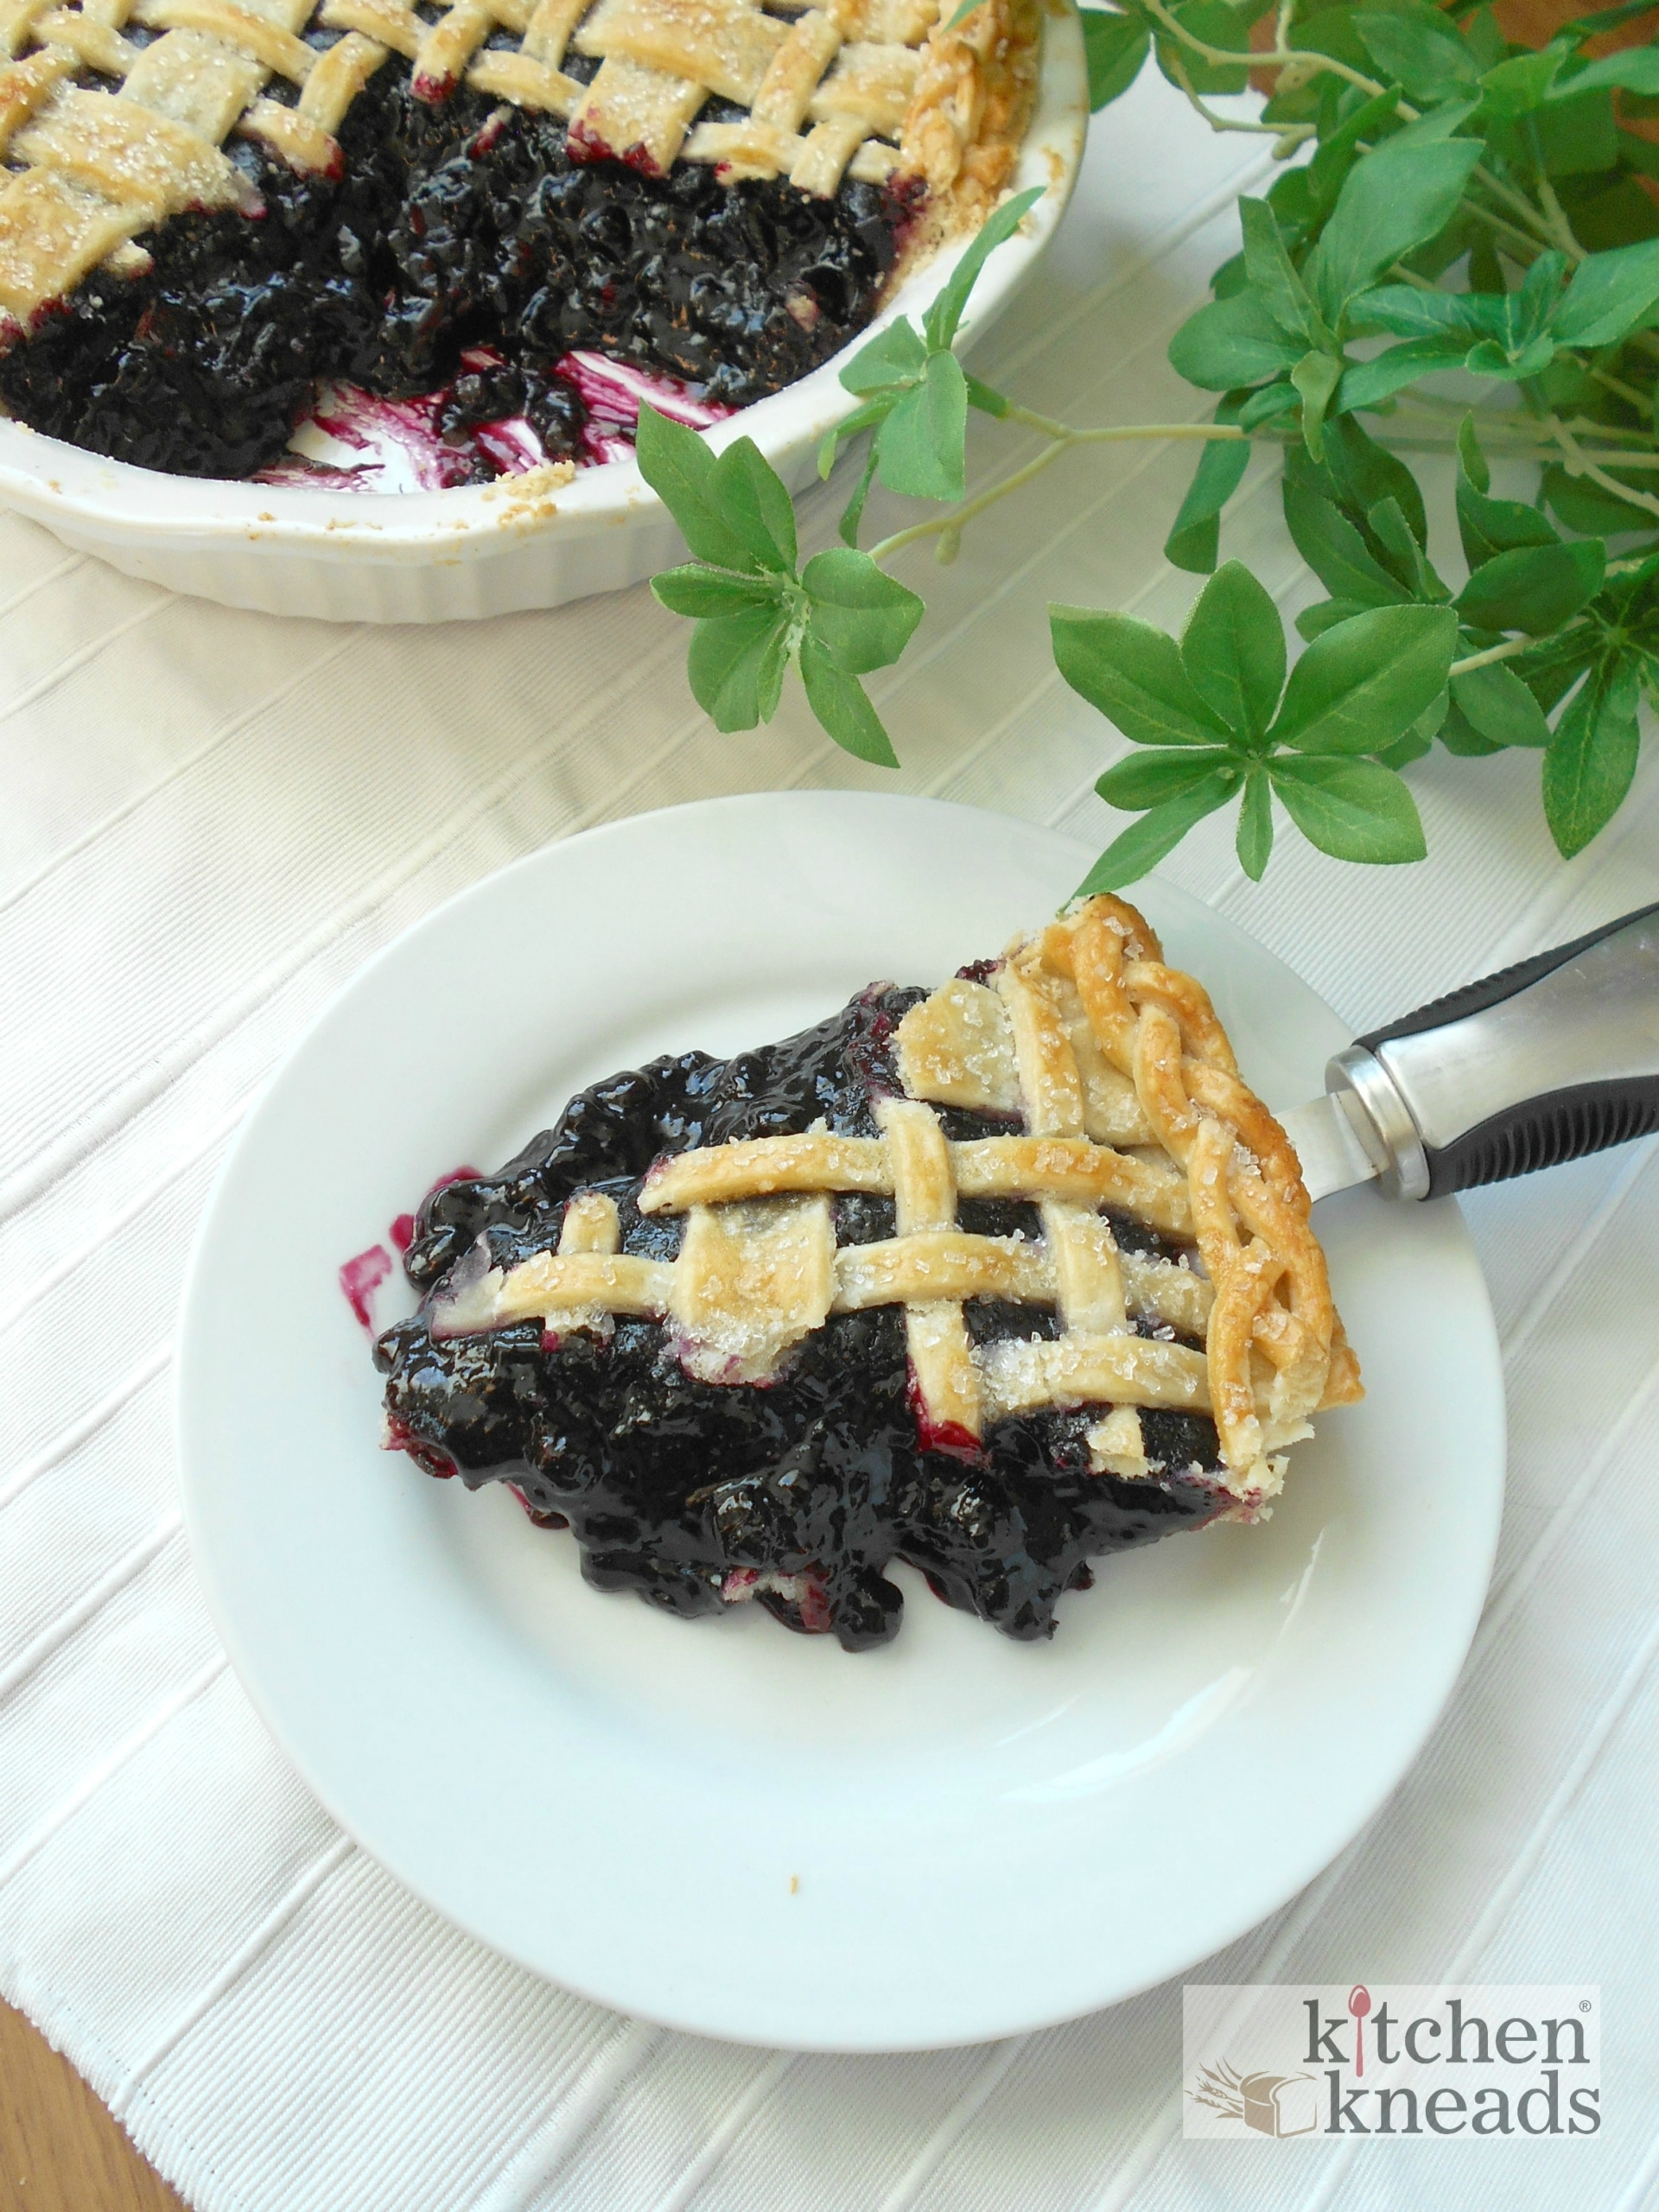 Plaid Blueberry Pie | The Original Pie Design on a Classic